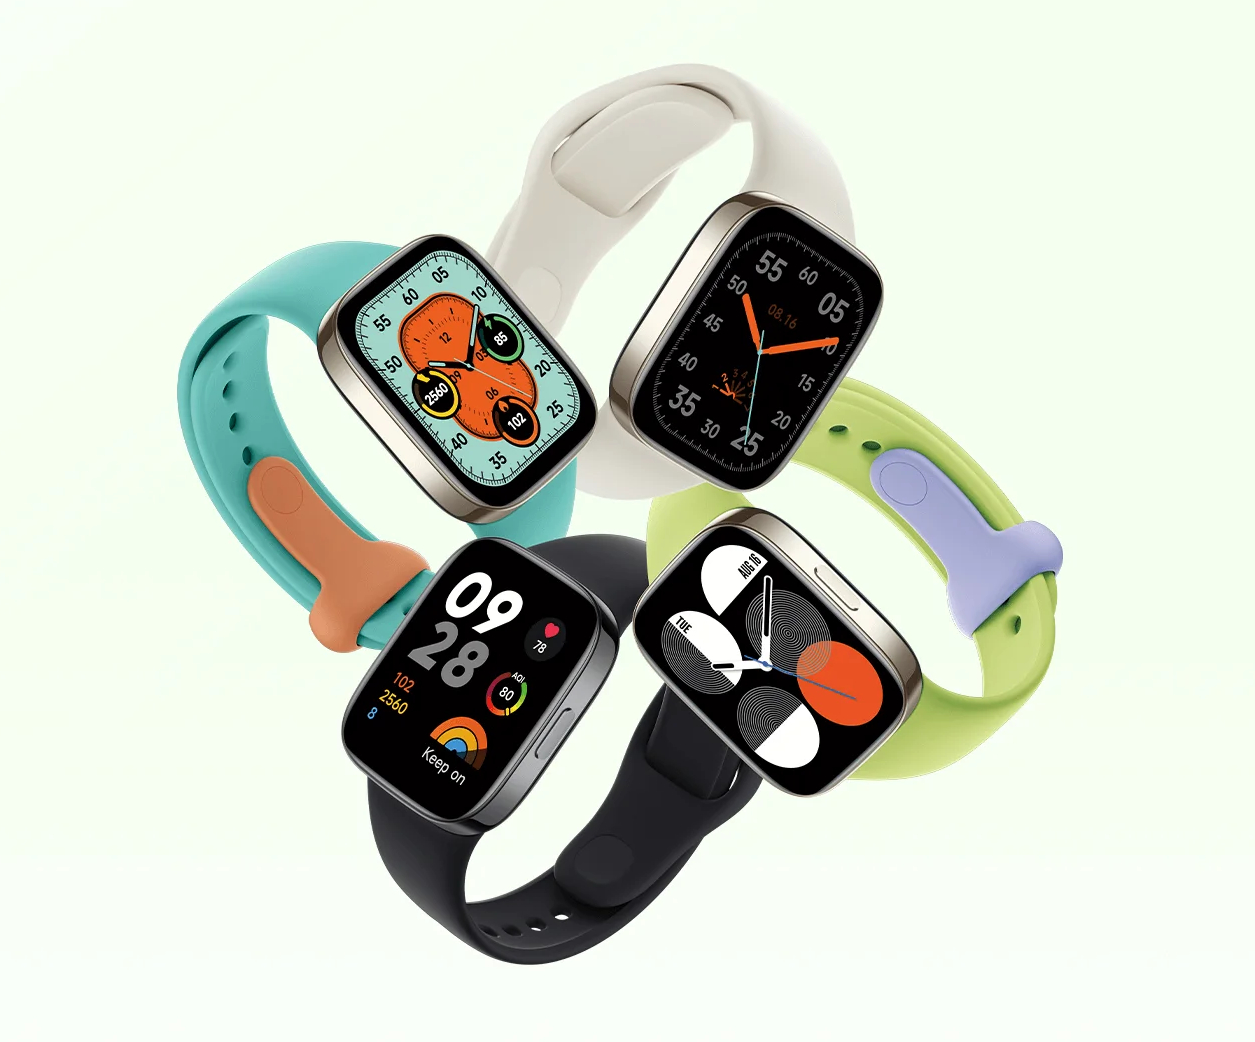 redmi-watch-3-active - Xiaomi UK